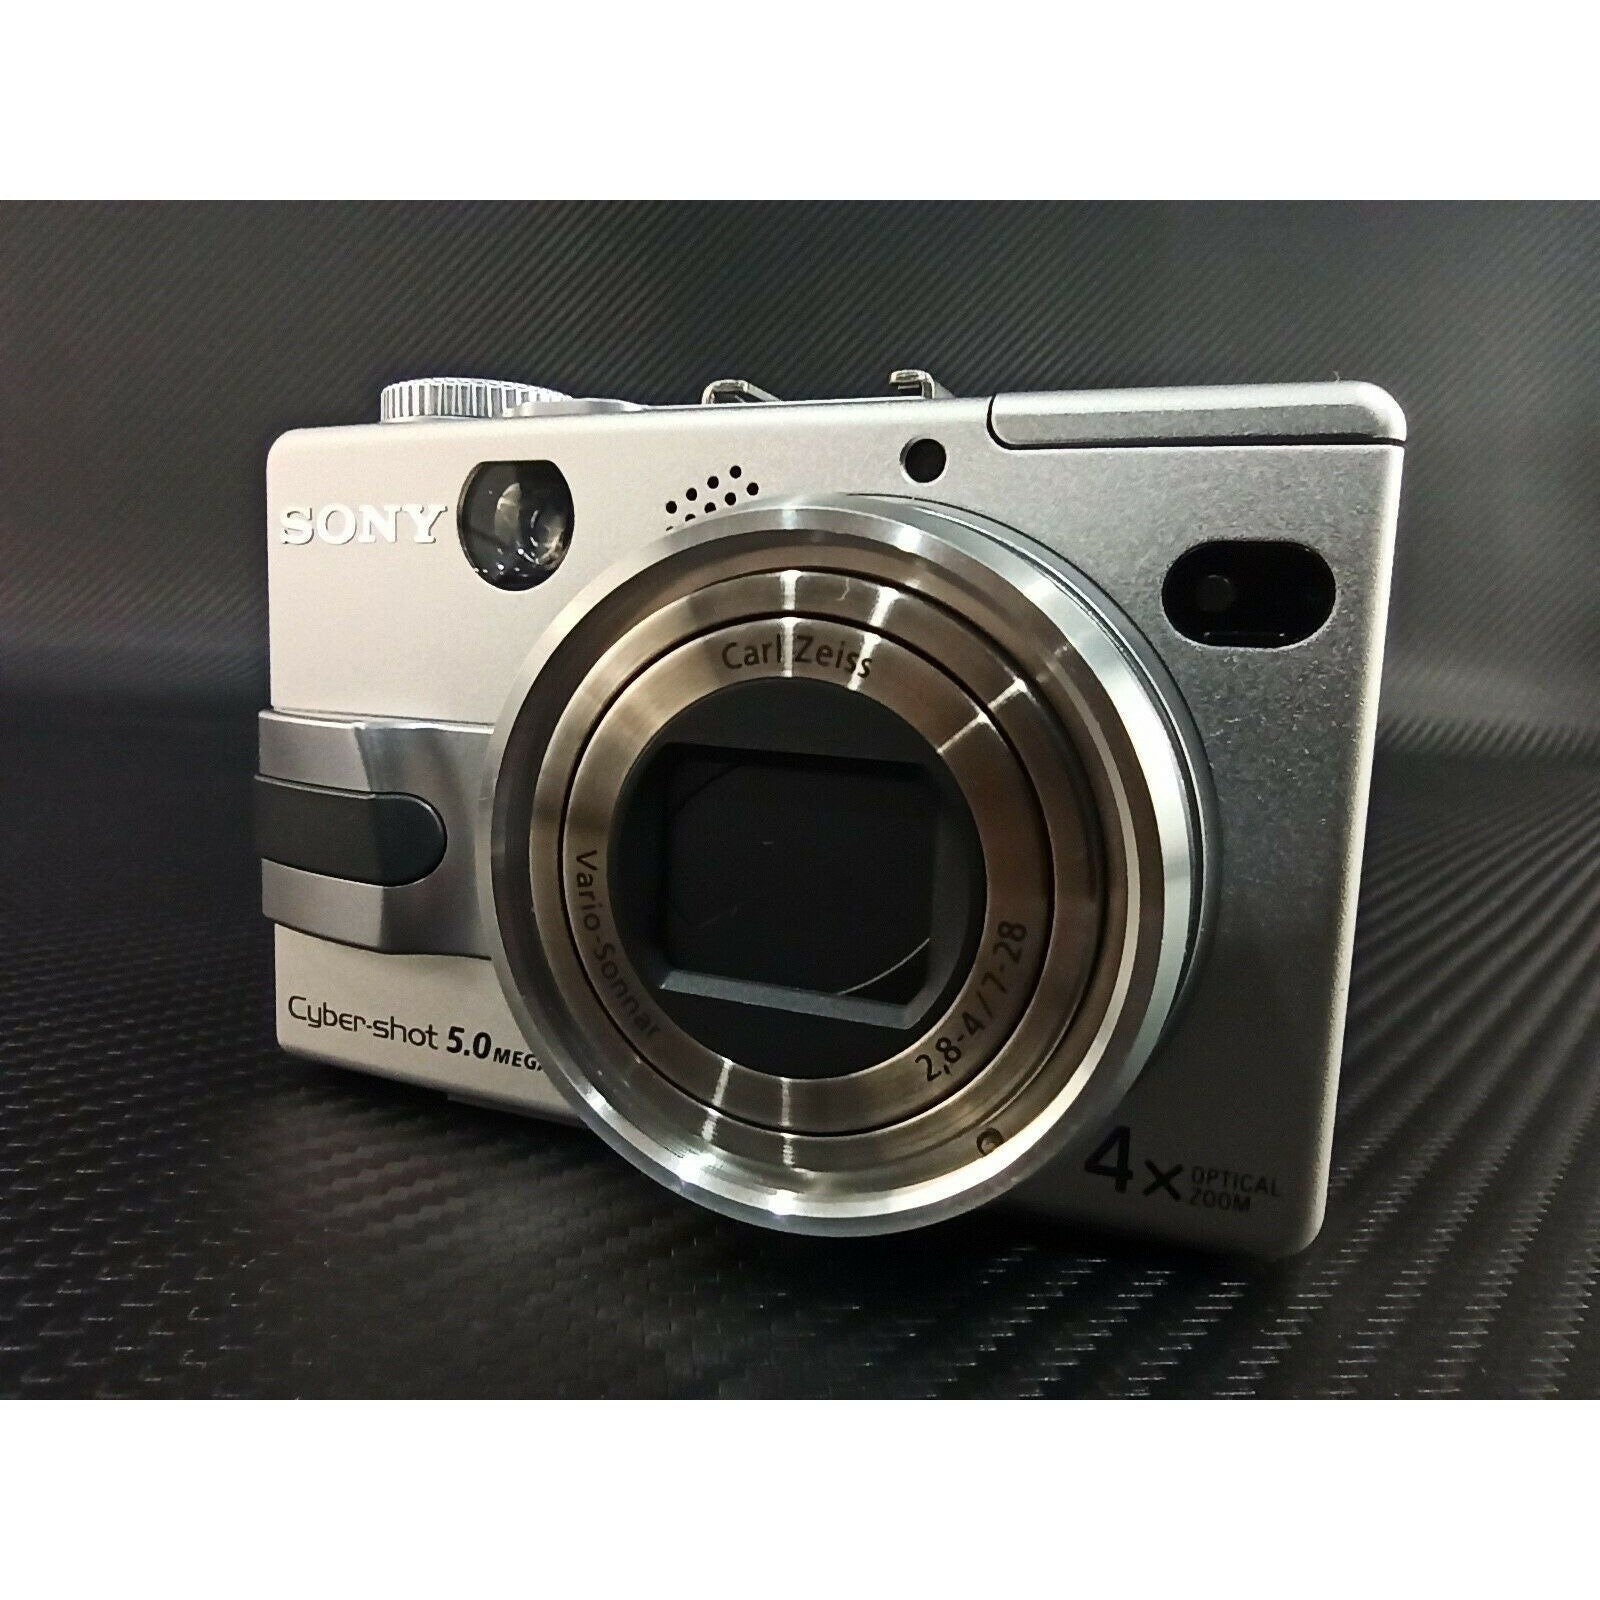 Sony Cyber-shot DSC-V1 5.0MP Digital Camera